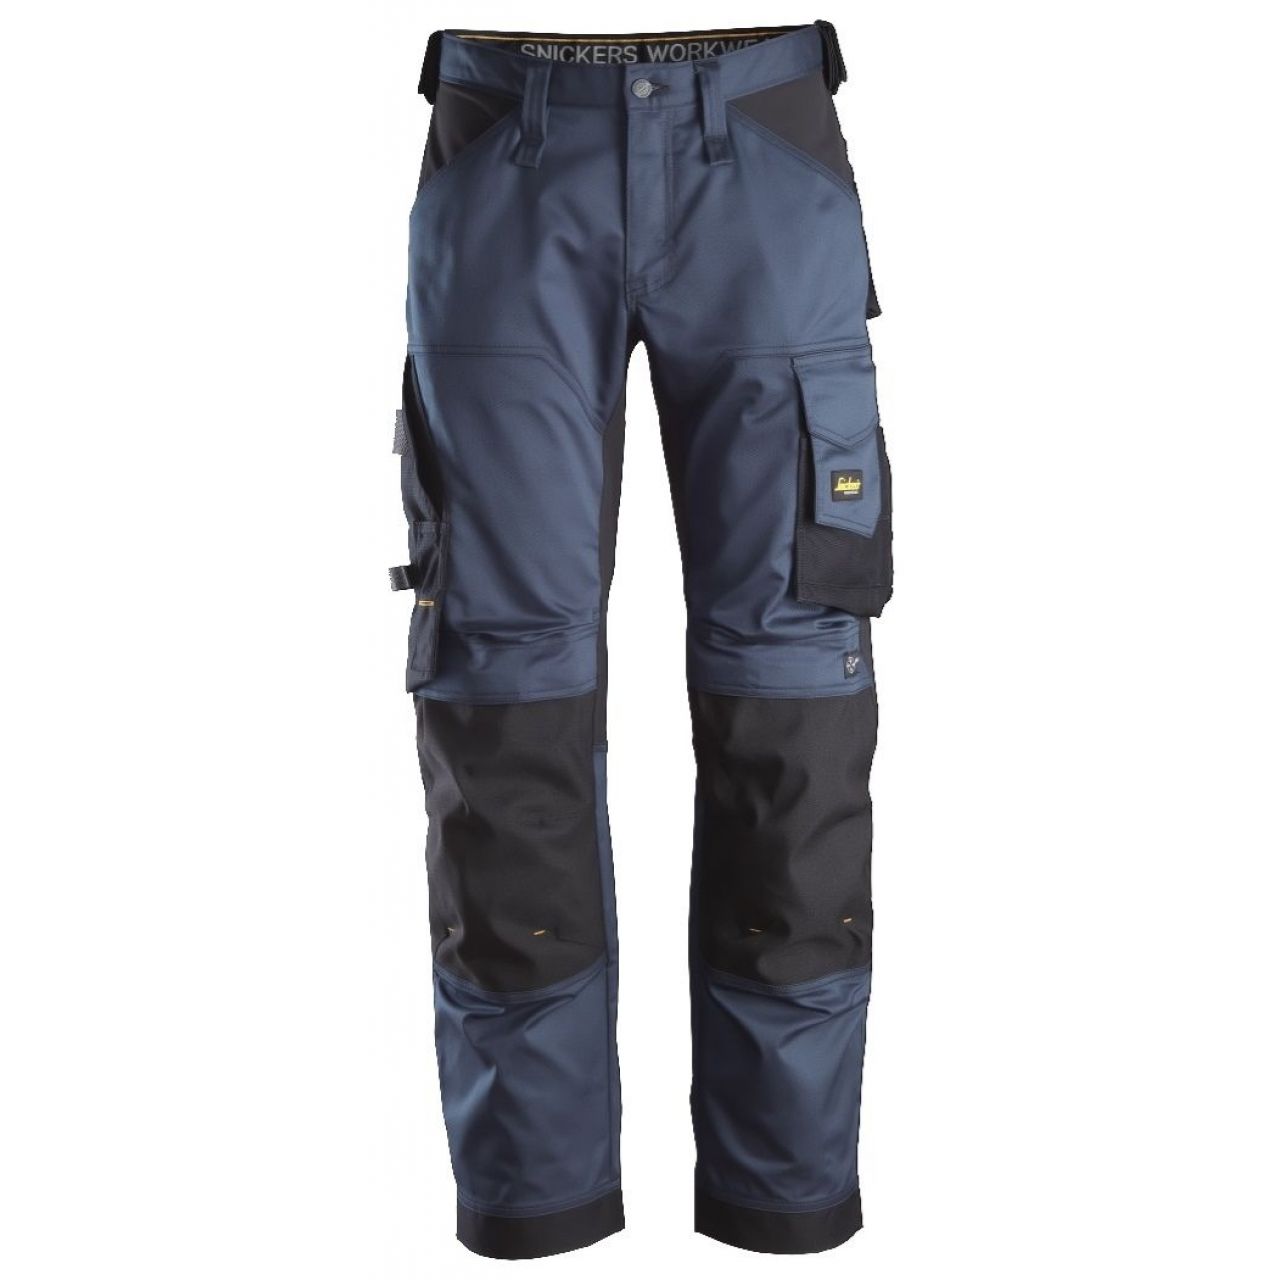 Pantalon elastico ajuste holgado AllroundWork azul marino-negro talla 092